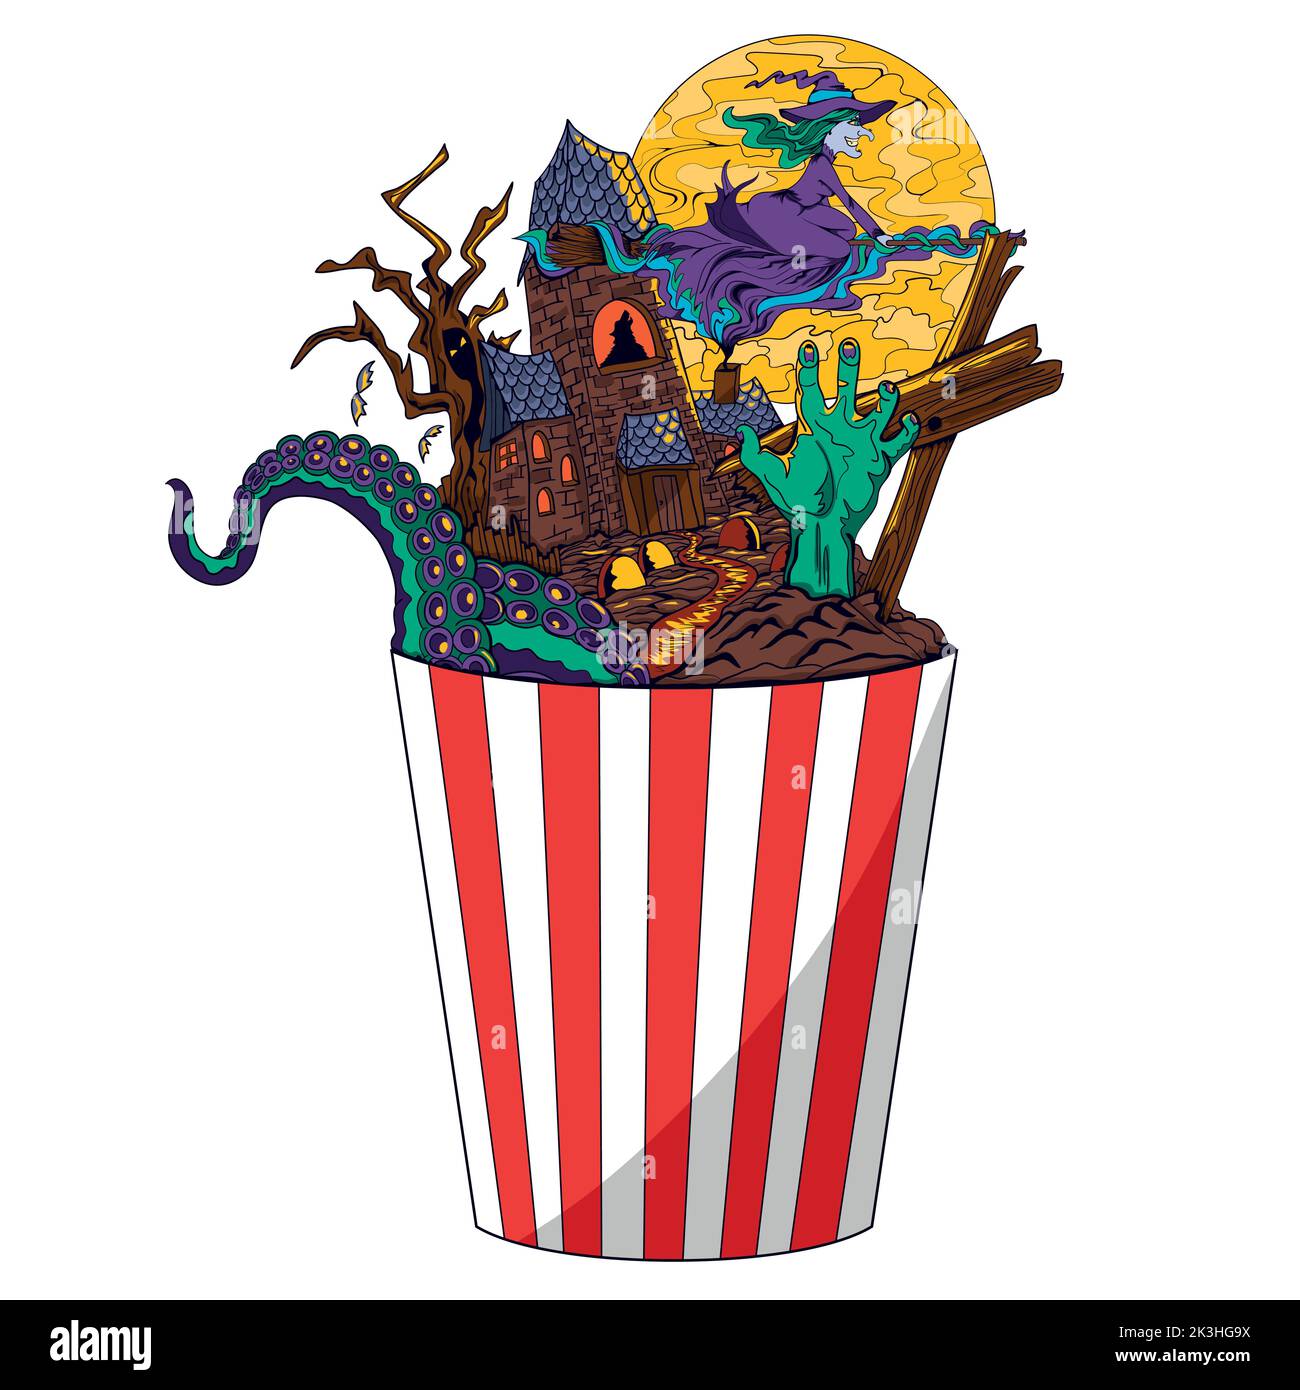 Horror Popcorn. Abstrakte Illustration für einen Wirbelsäulen-Chiller-Film in einer Popcorn-Tasse. Thriller-Geschichten. Horrorfilmfestival. Stock Vektor